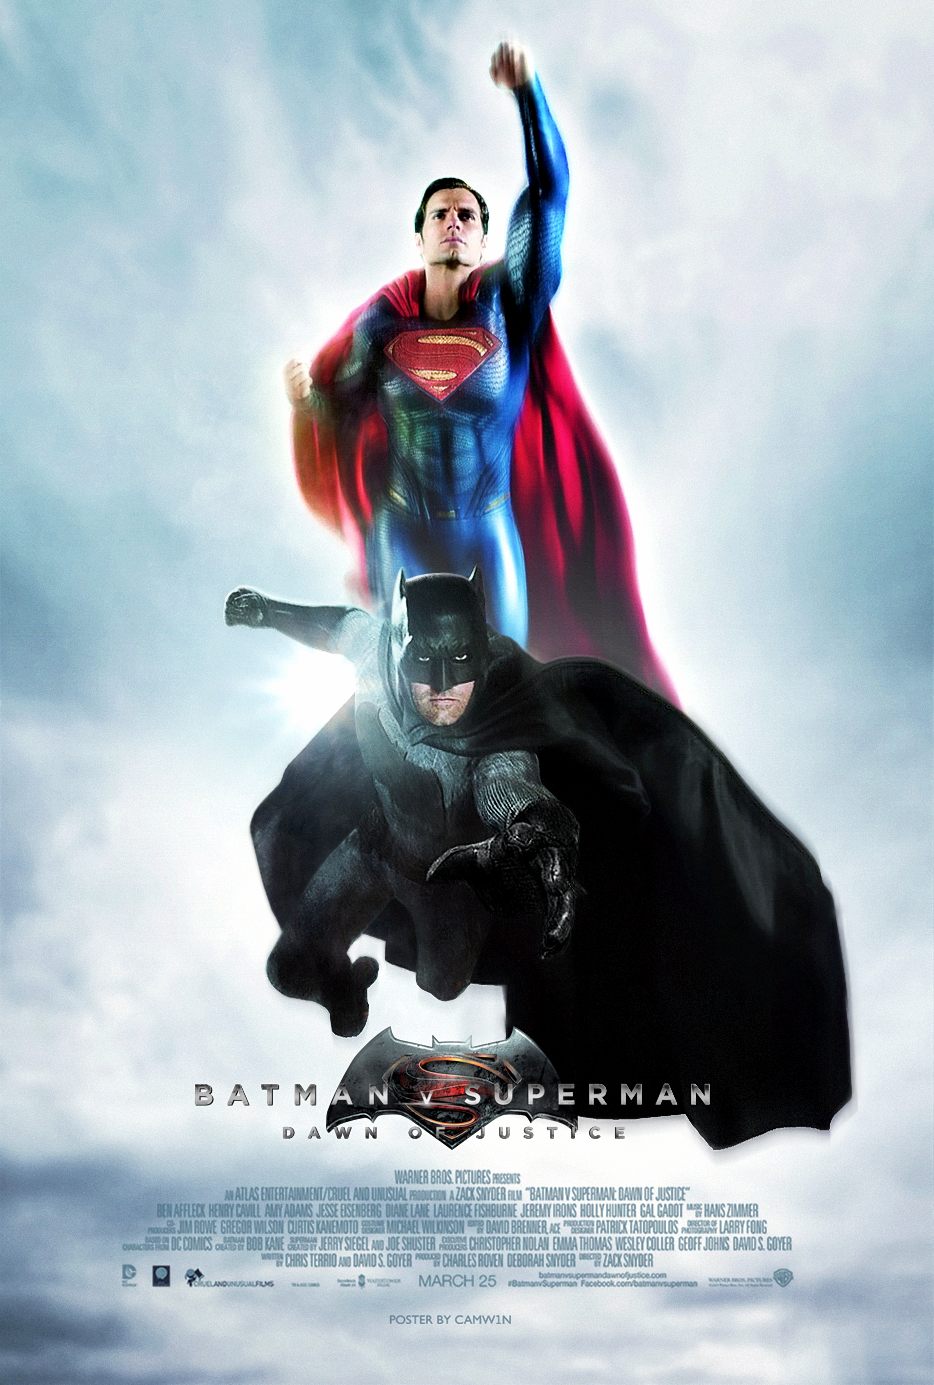 Batman v Superman: Dawn of Justice Art - ID: 111228 - Art ...